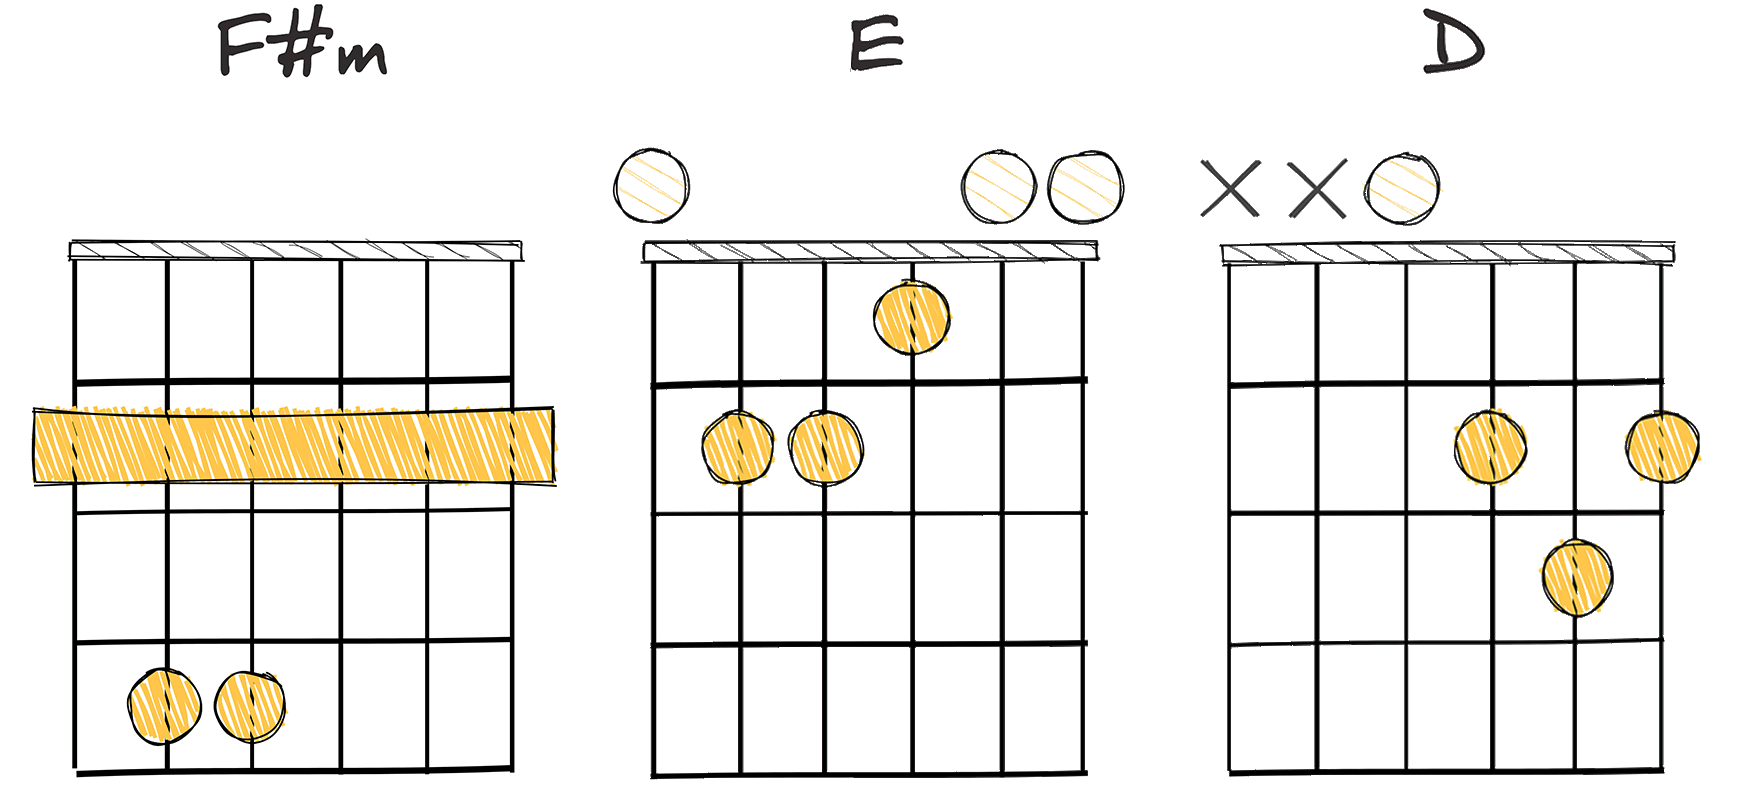 vi-V-IV (6-5-4) chords diagram